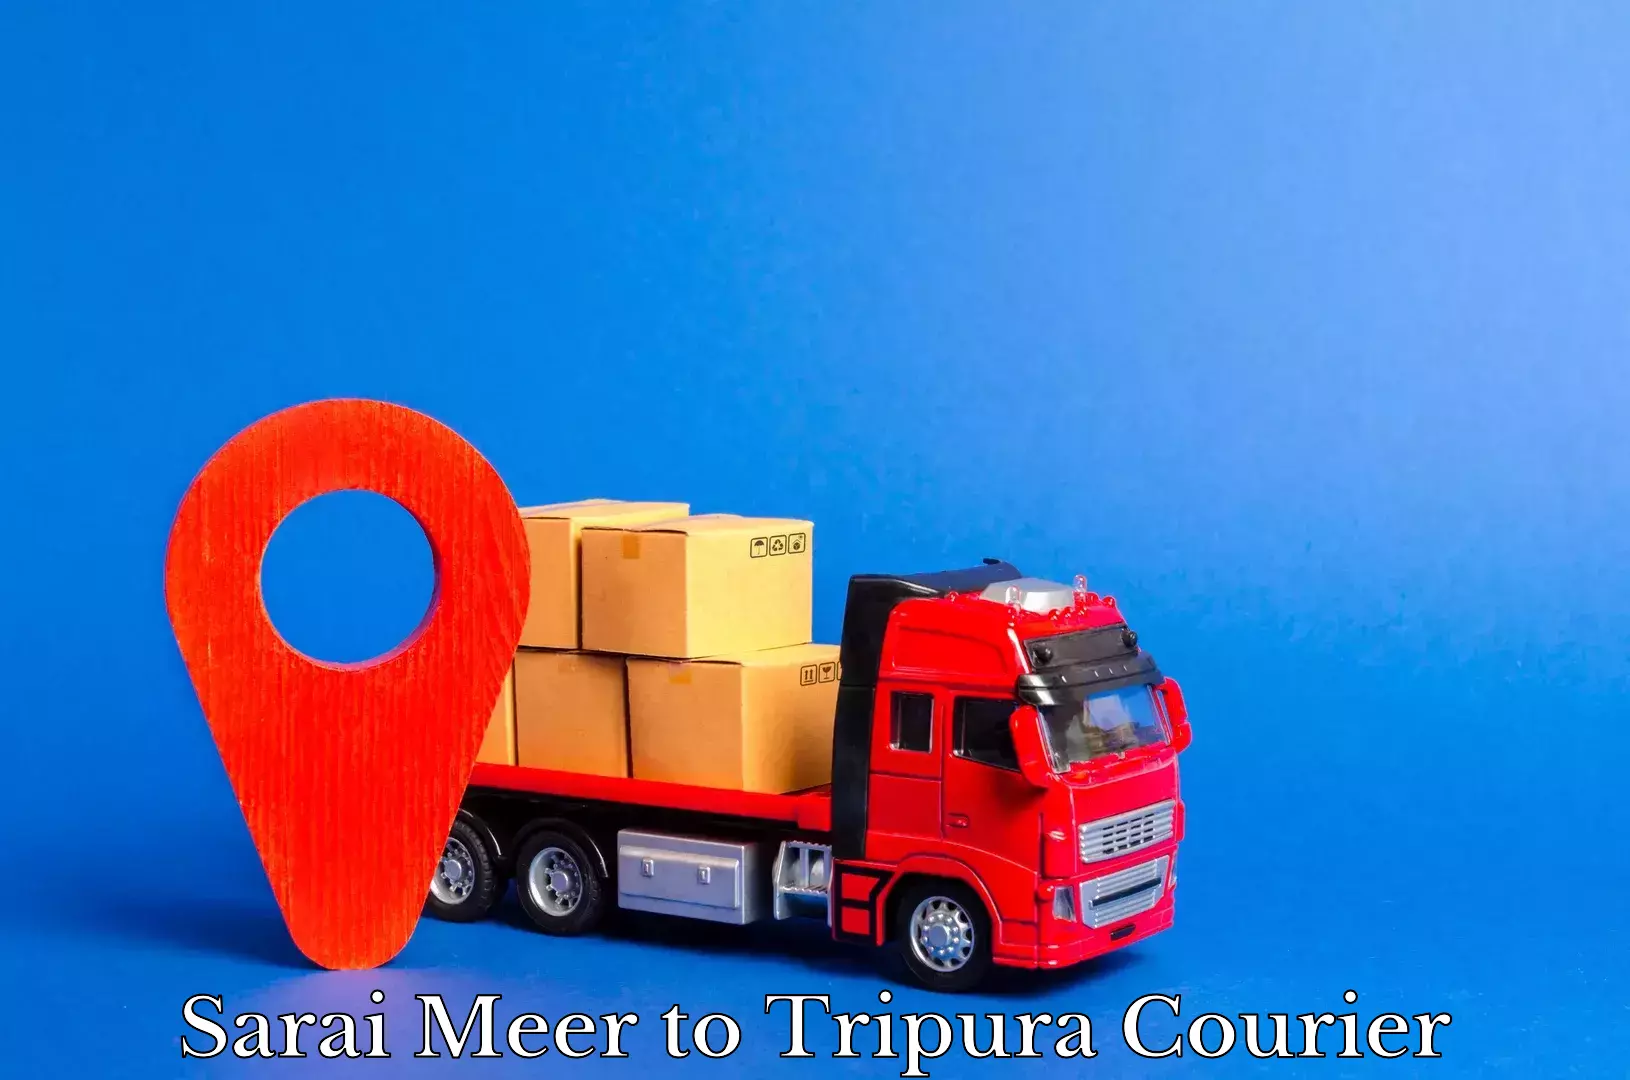 Express logistics providers Sarai Meer to Tripura